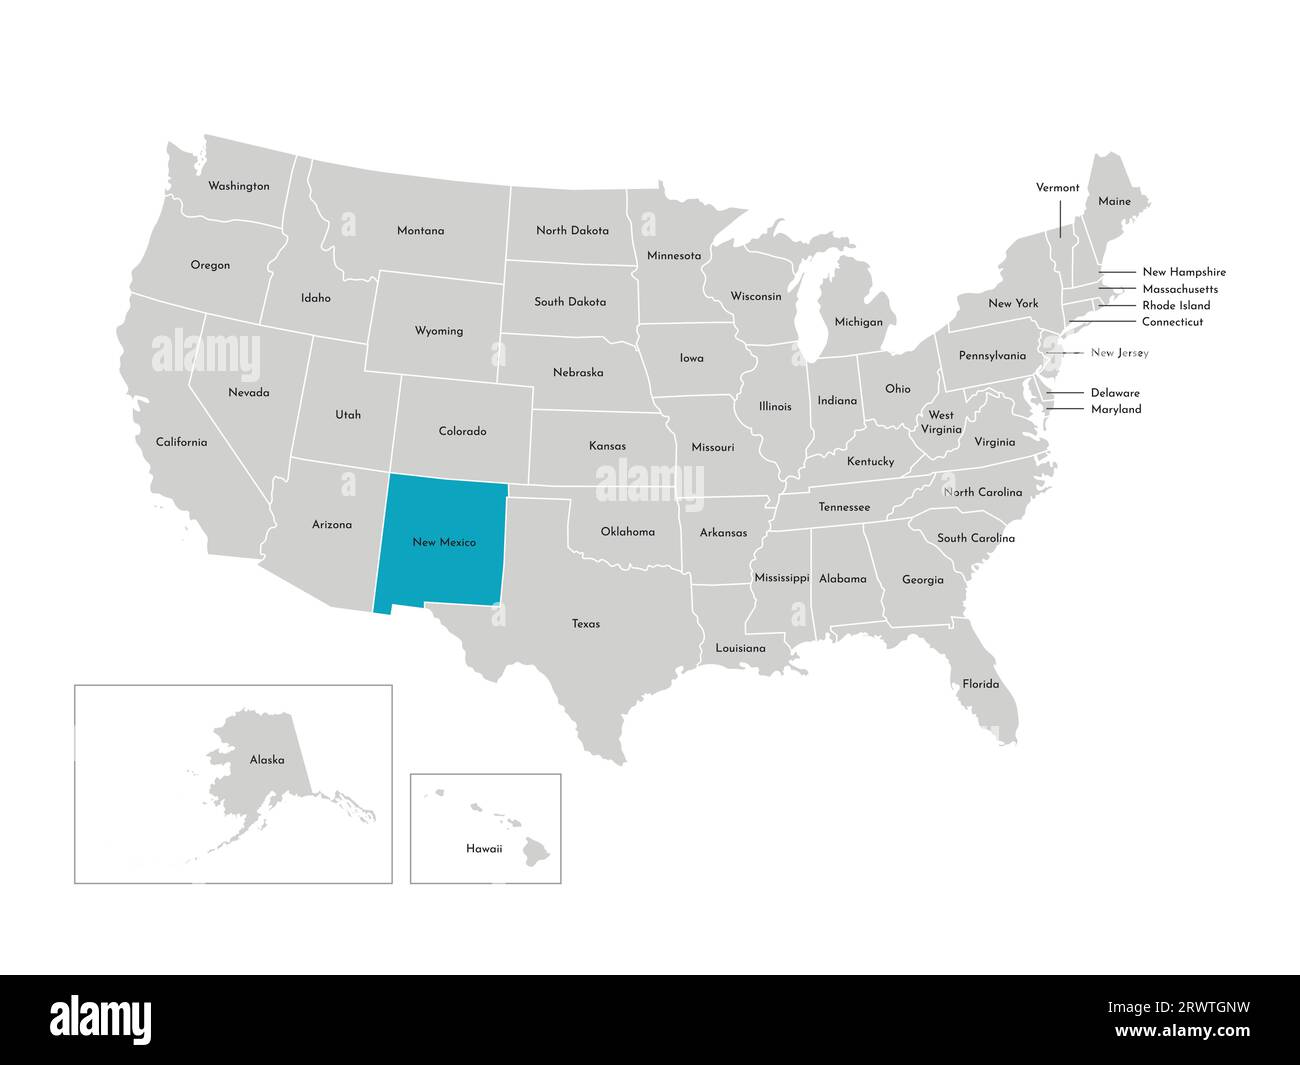 Vektor-isolierte Illustration einer vereinfachten Verwaltungskarte der USA. Grenzen der staaten mit Namen. Blaue Silhouette von New Mexico (Bundesstaat). Stock Vektor